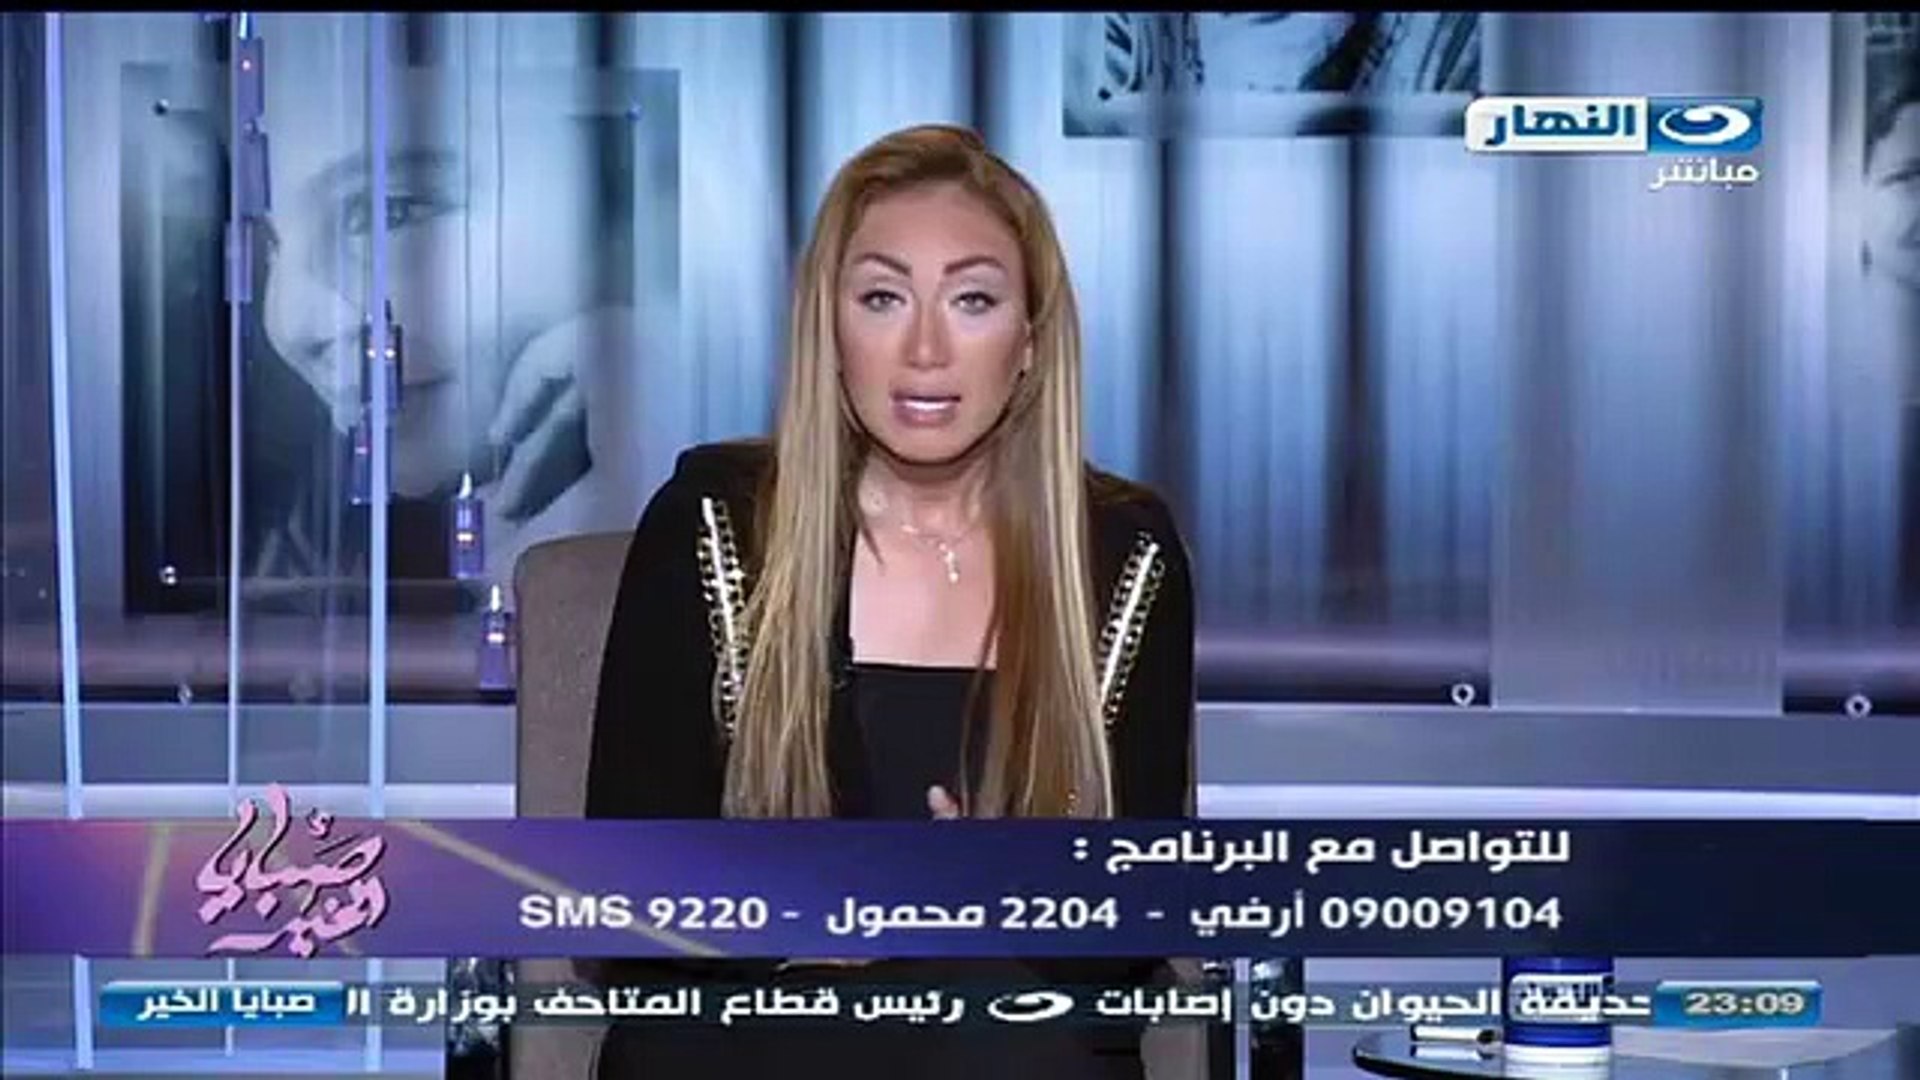 حلقة ريهام سعيد امس كاملة يوتيوب برنامج صبايا الخير (1) - video Dailymotion